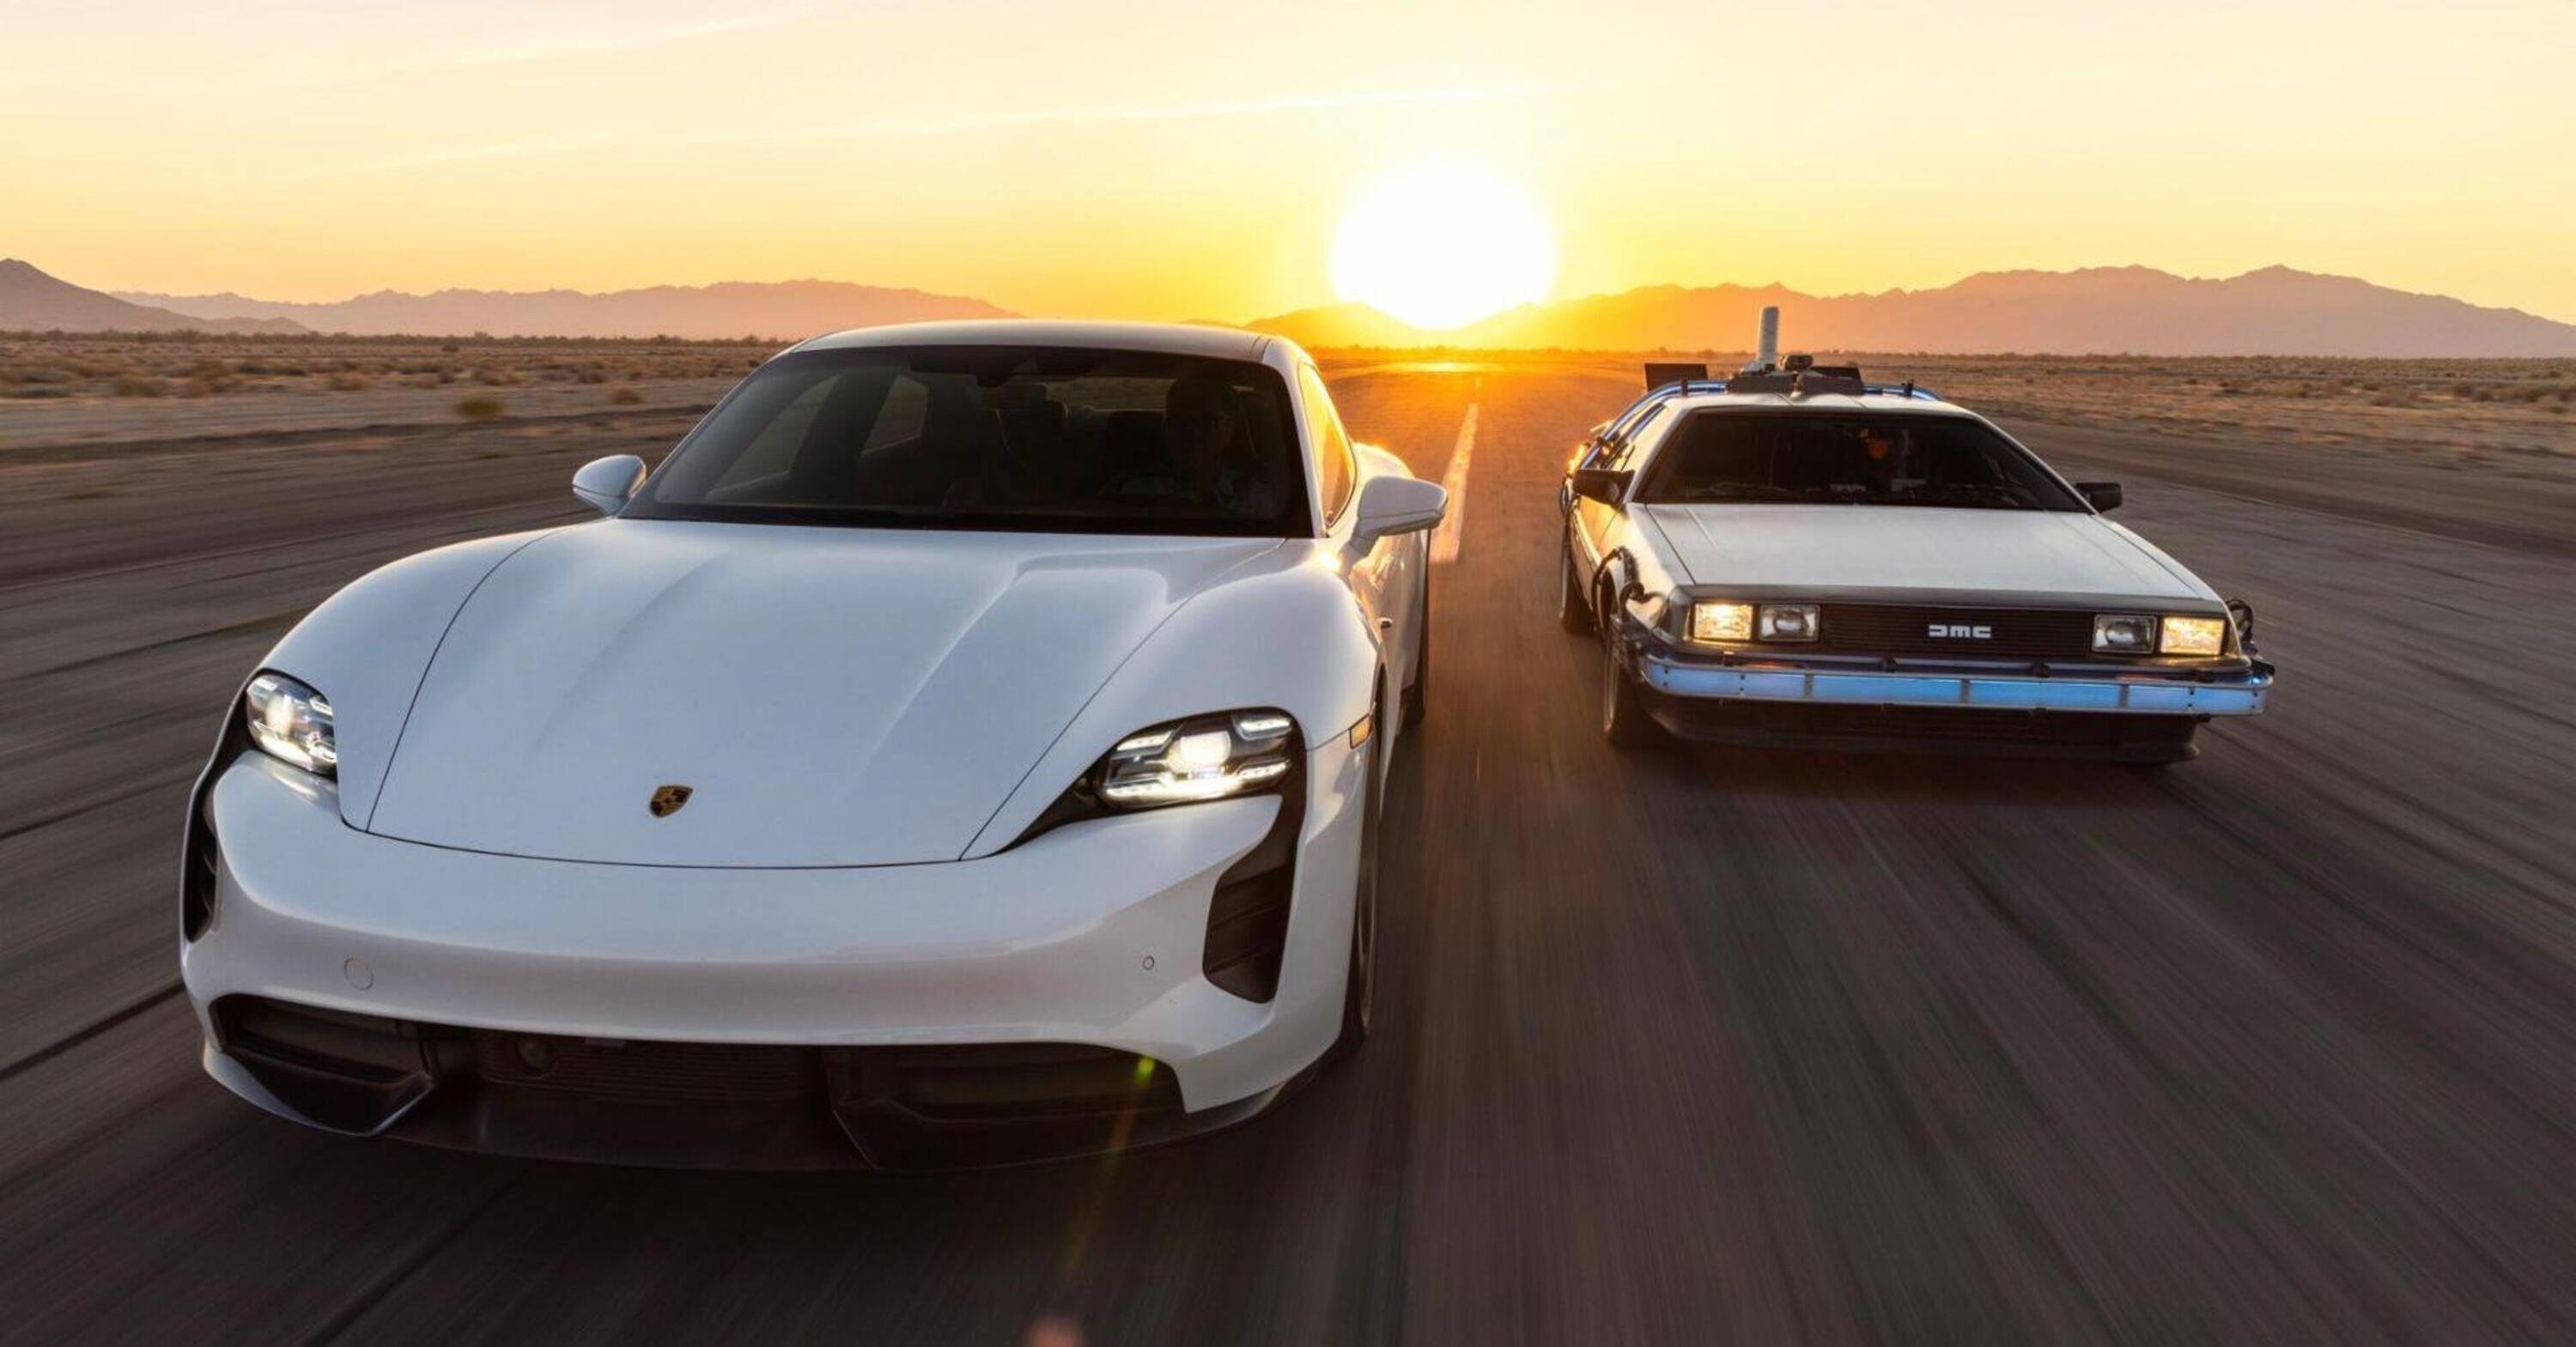 Grande Giove! Porsche Taycan e la DeLorean di Ritorno al Futuro in uno spot che emoziona [VIDEO]